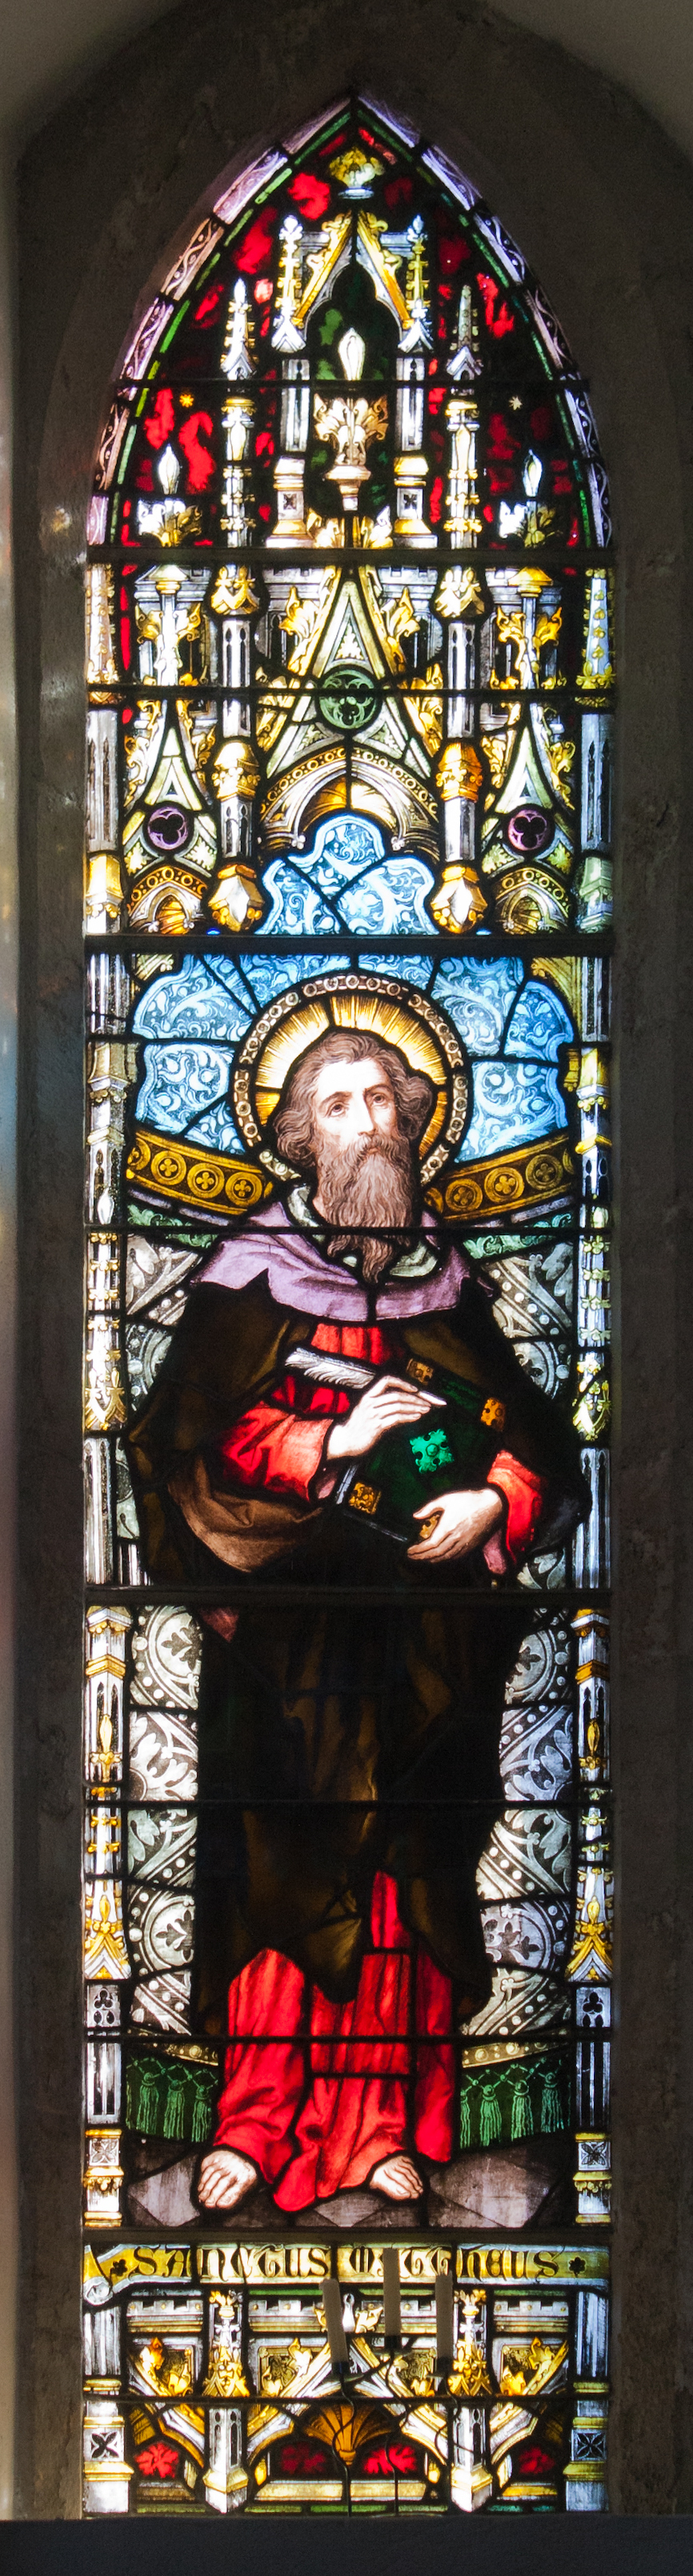 Kildare White Abbey South Transept Window Saint Matthew 2013 09 04